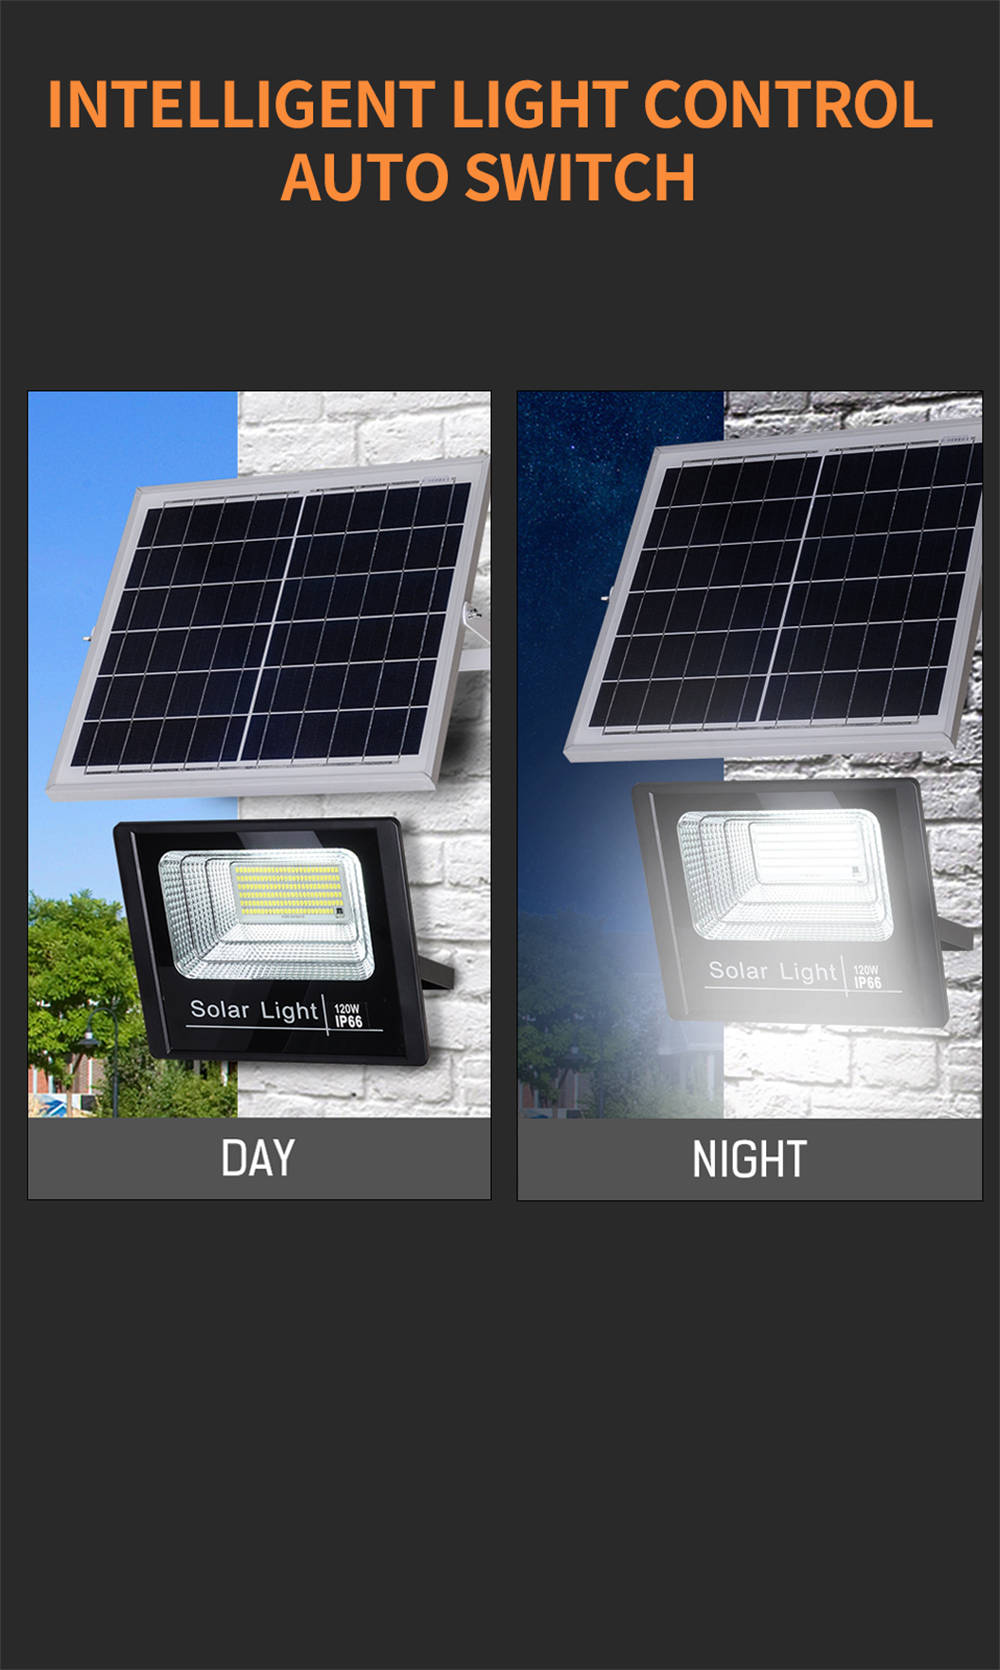 નવી આઉટડોર લાઇટિંગ ફિક્સ્ચર ફ્લડ લાઇટ સોલર બેટરી ડેકોરેટિવ ગાર્ડન સ્ટ્રીટ લેમ્પ 40W આઉટડોર LED ફ્લડ લાઇટ ફોર ગાર્ડન (5)